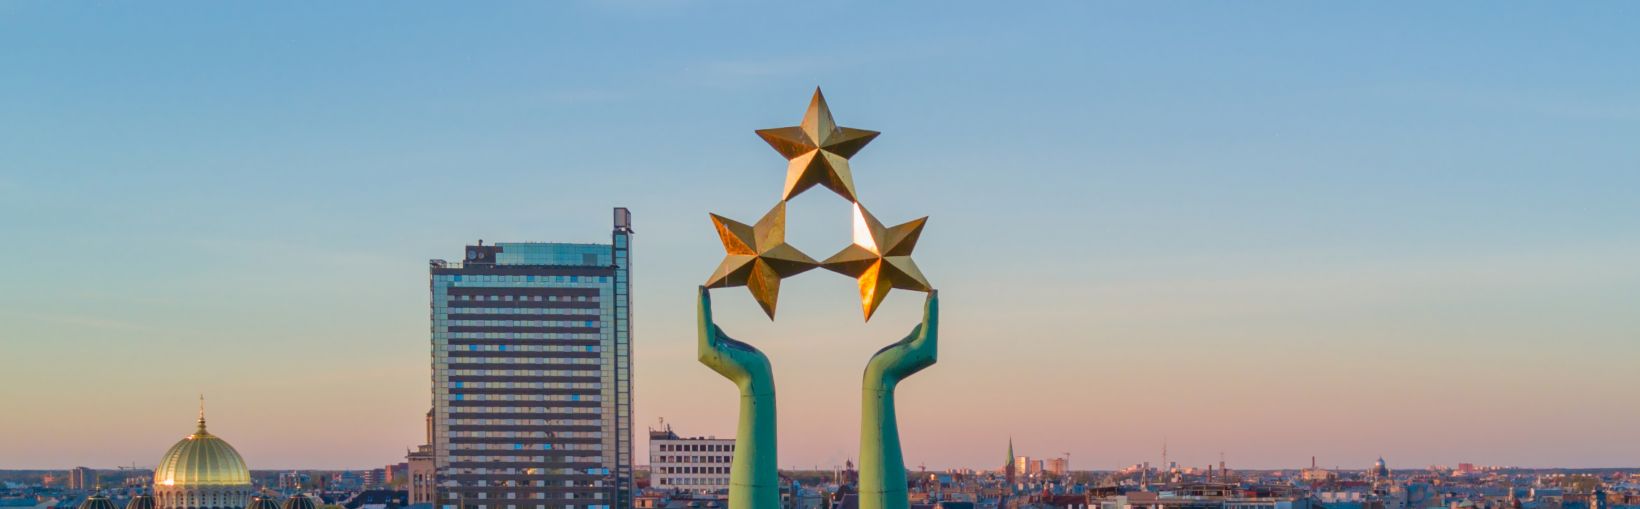 Belle vue sur le coucher de soleil à Riga par la statue de la liberté - Milda. Liberté en Lettonie. Statue de la Liberté tenant trois étoiles au-dessus de la ville.